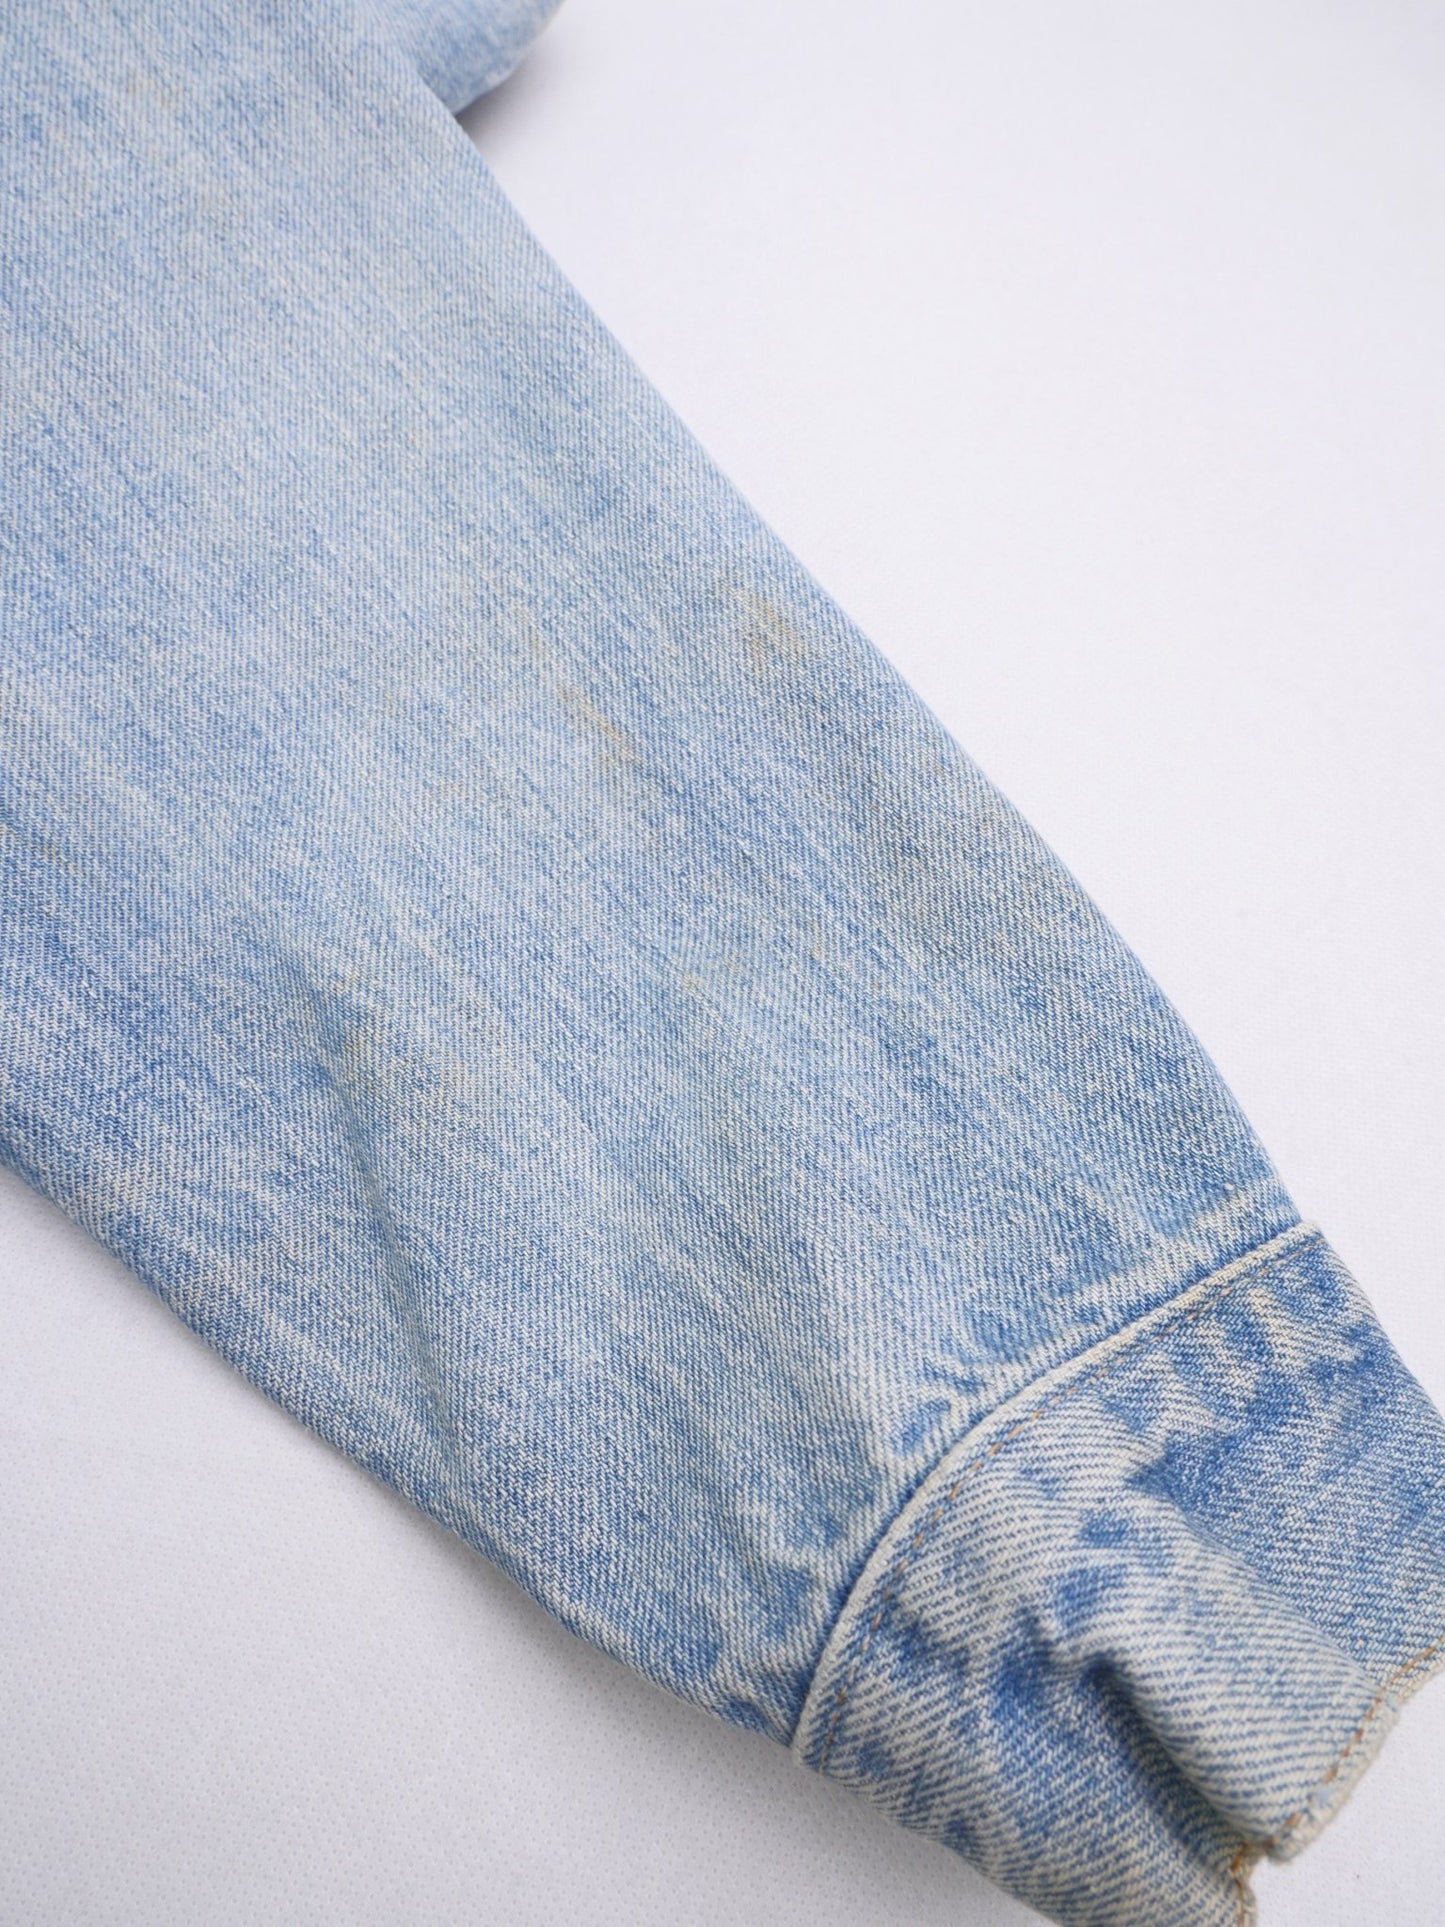 levis patched Logo blue Denim Vintage Jacke - Peeces